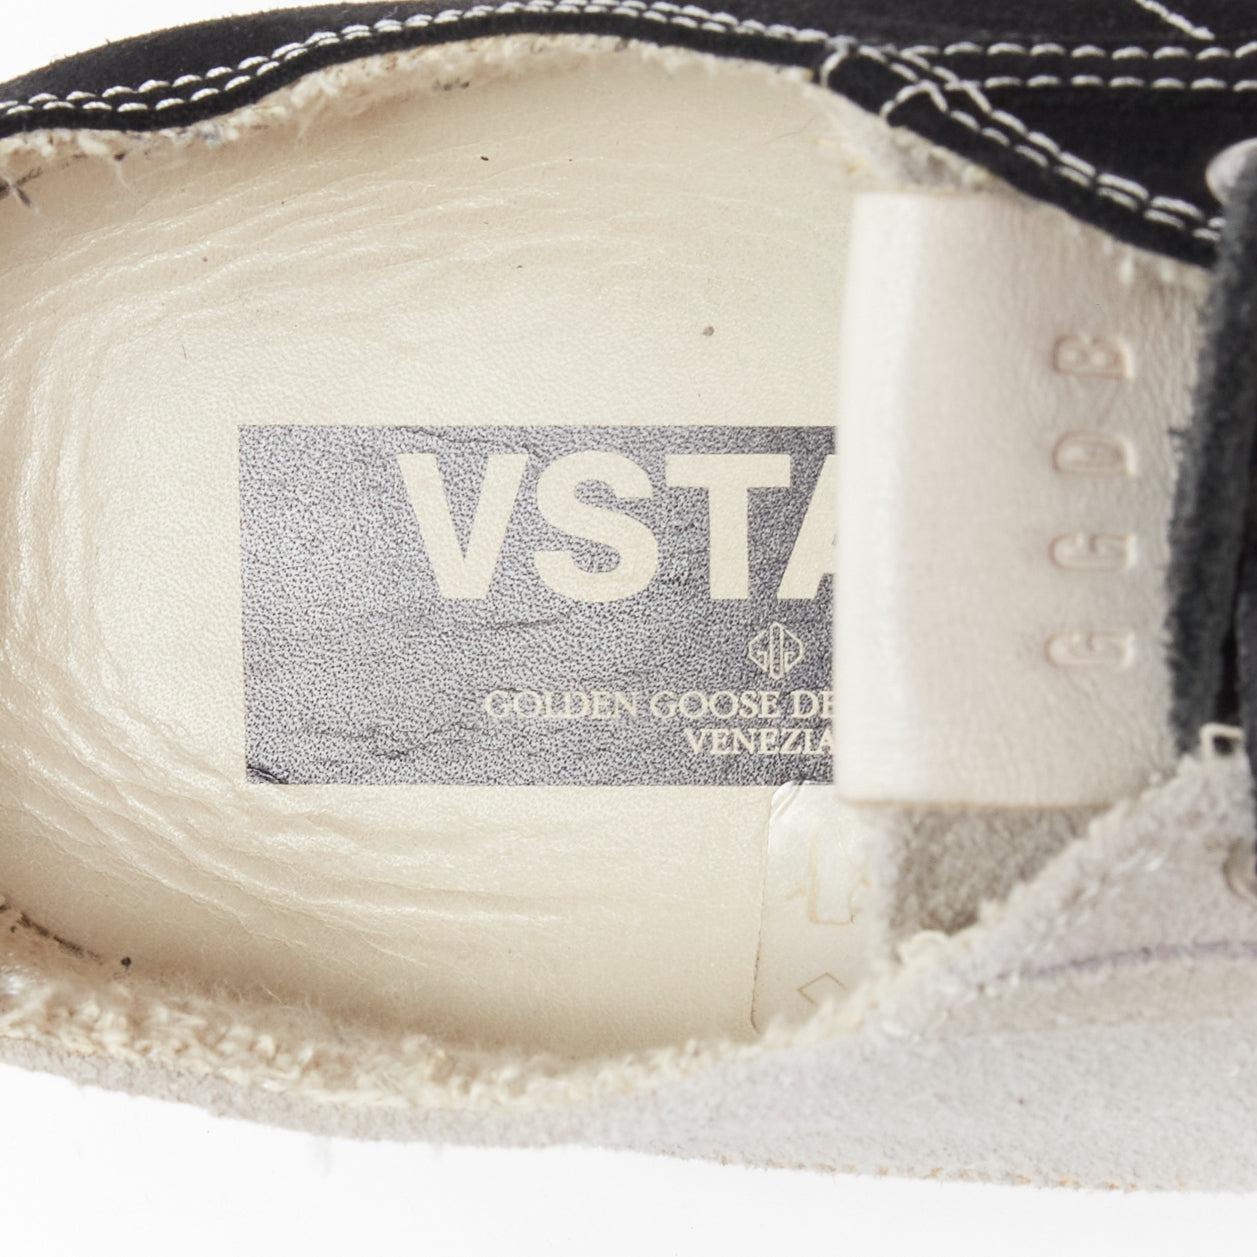 GOLDEN GOOSE VSTAR2 bicolor grey black distressed leather sneakers EU40 For Sale 4